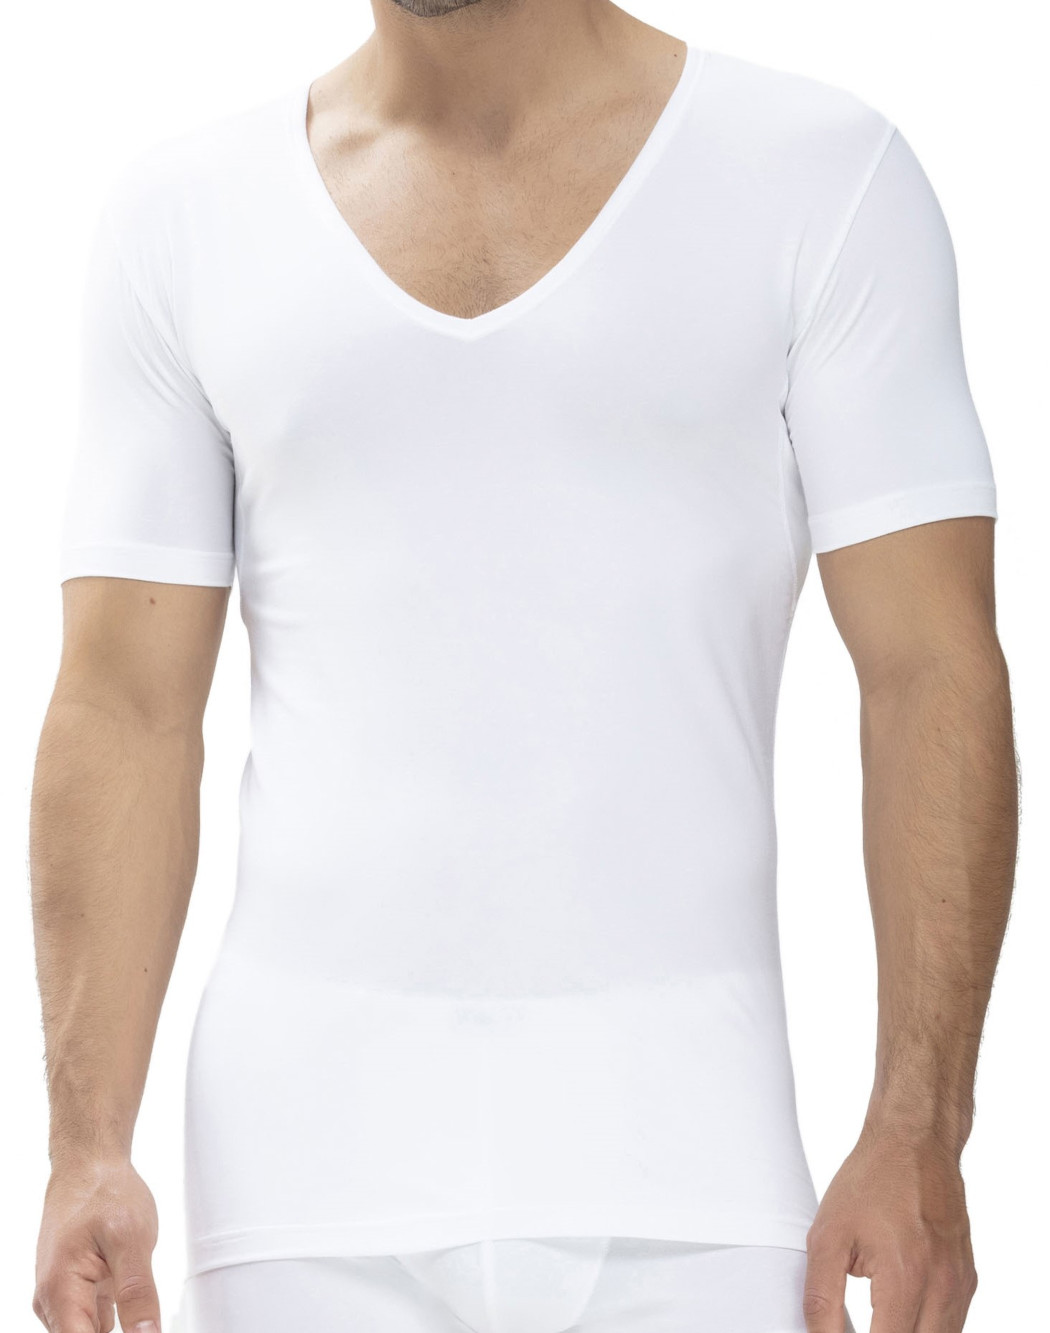 Mey Serie Dry Cotton Functional Herren V-Neck Shirt Slim Fit